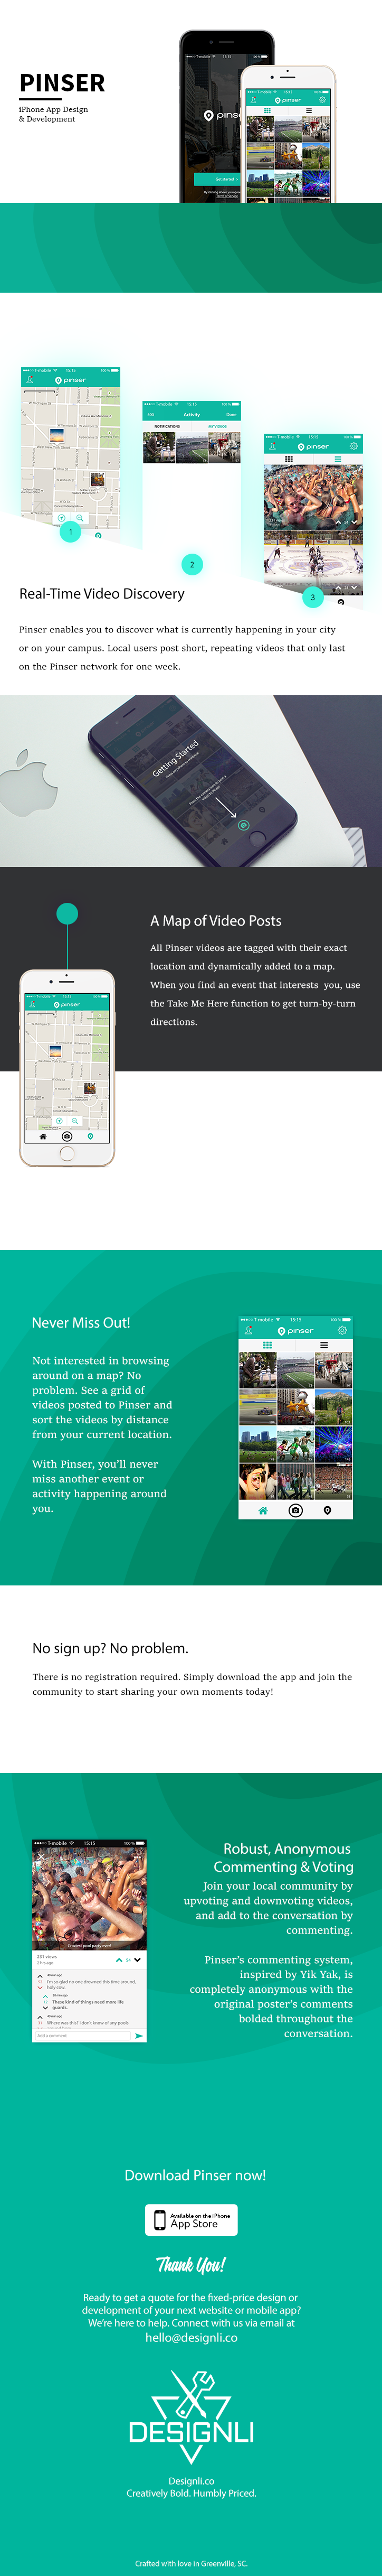 pinser Designli app mobile ux UI iphone iPad